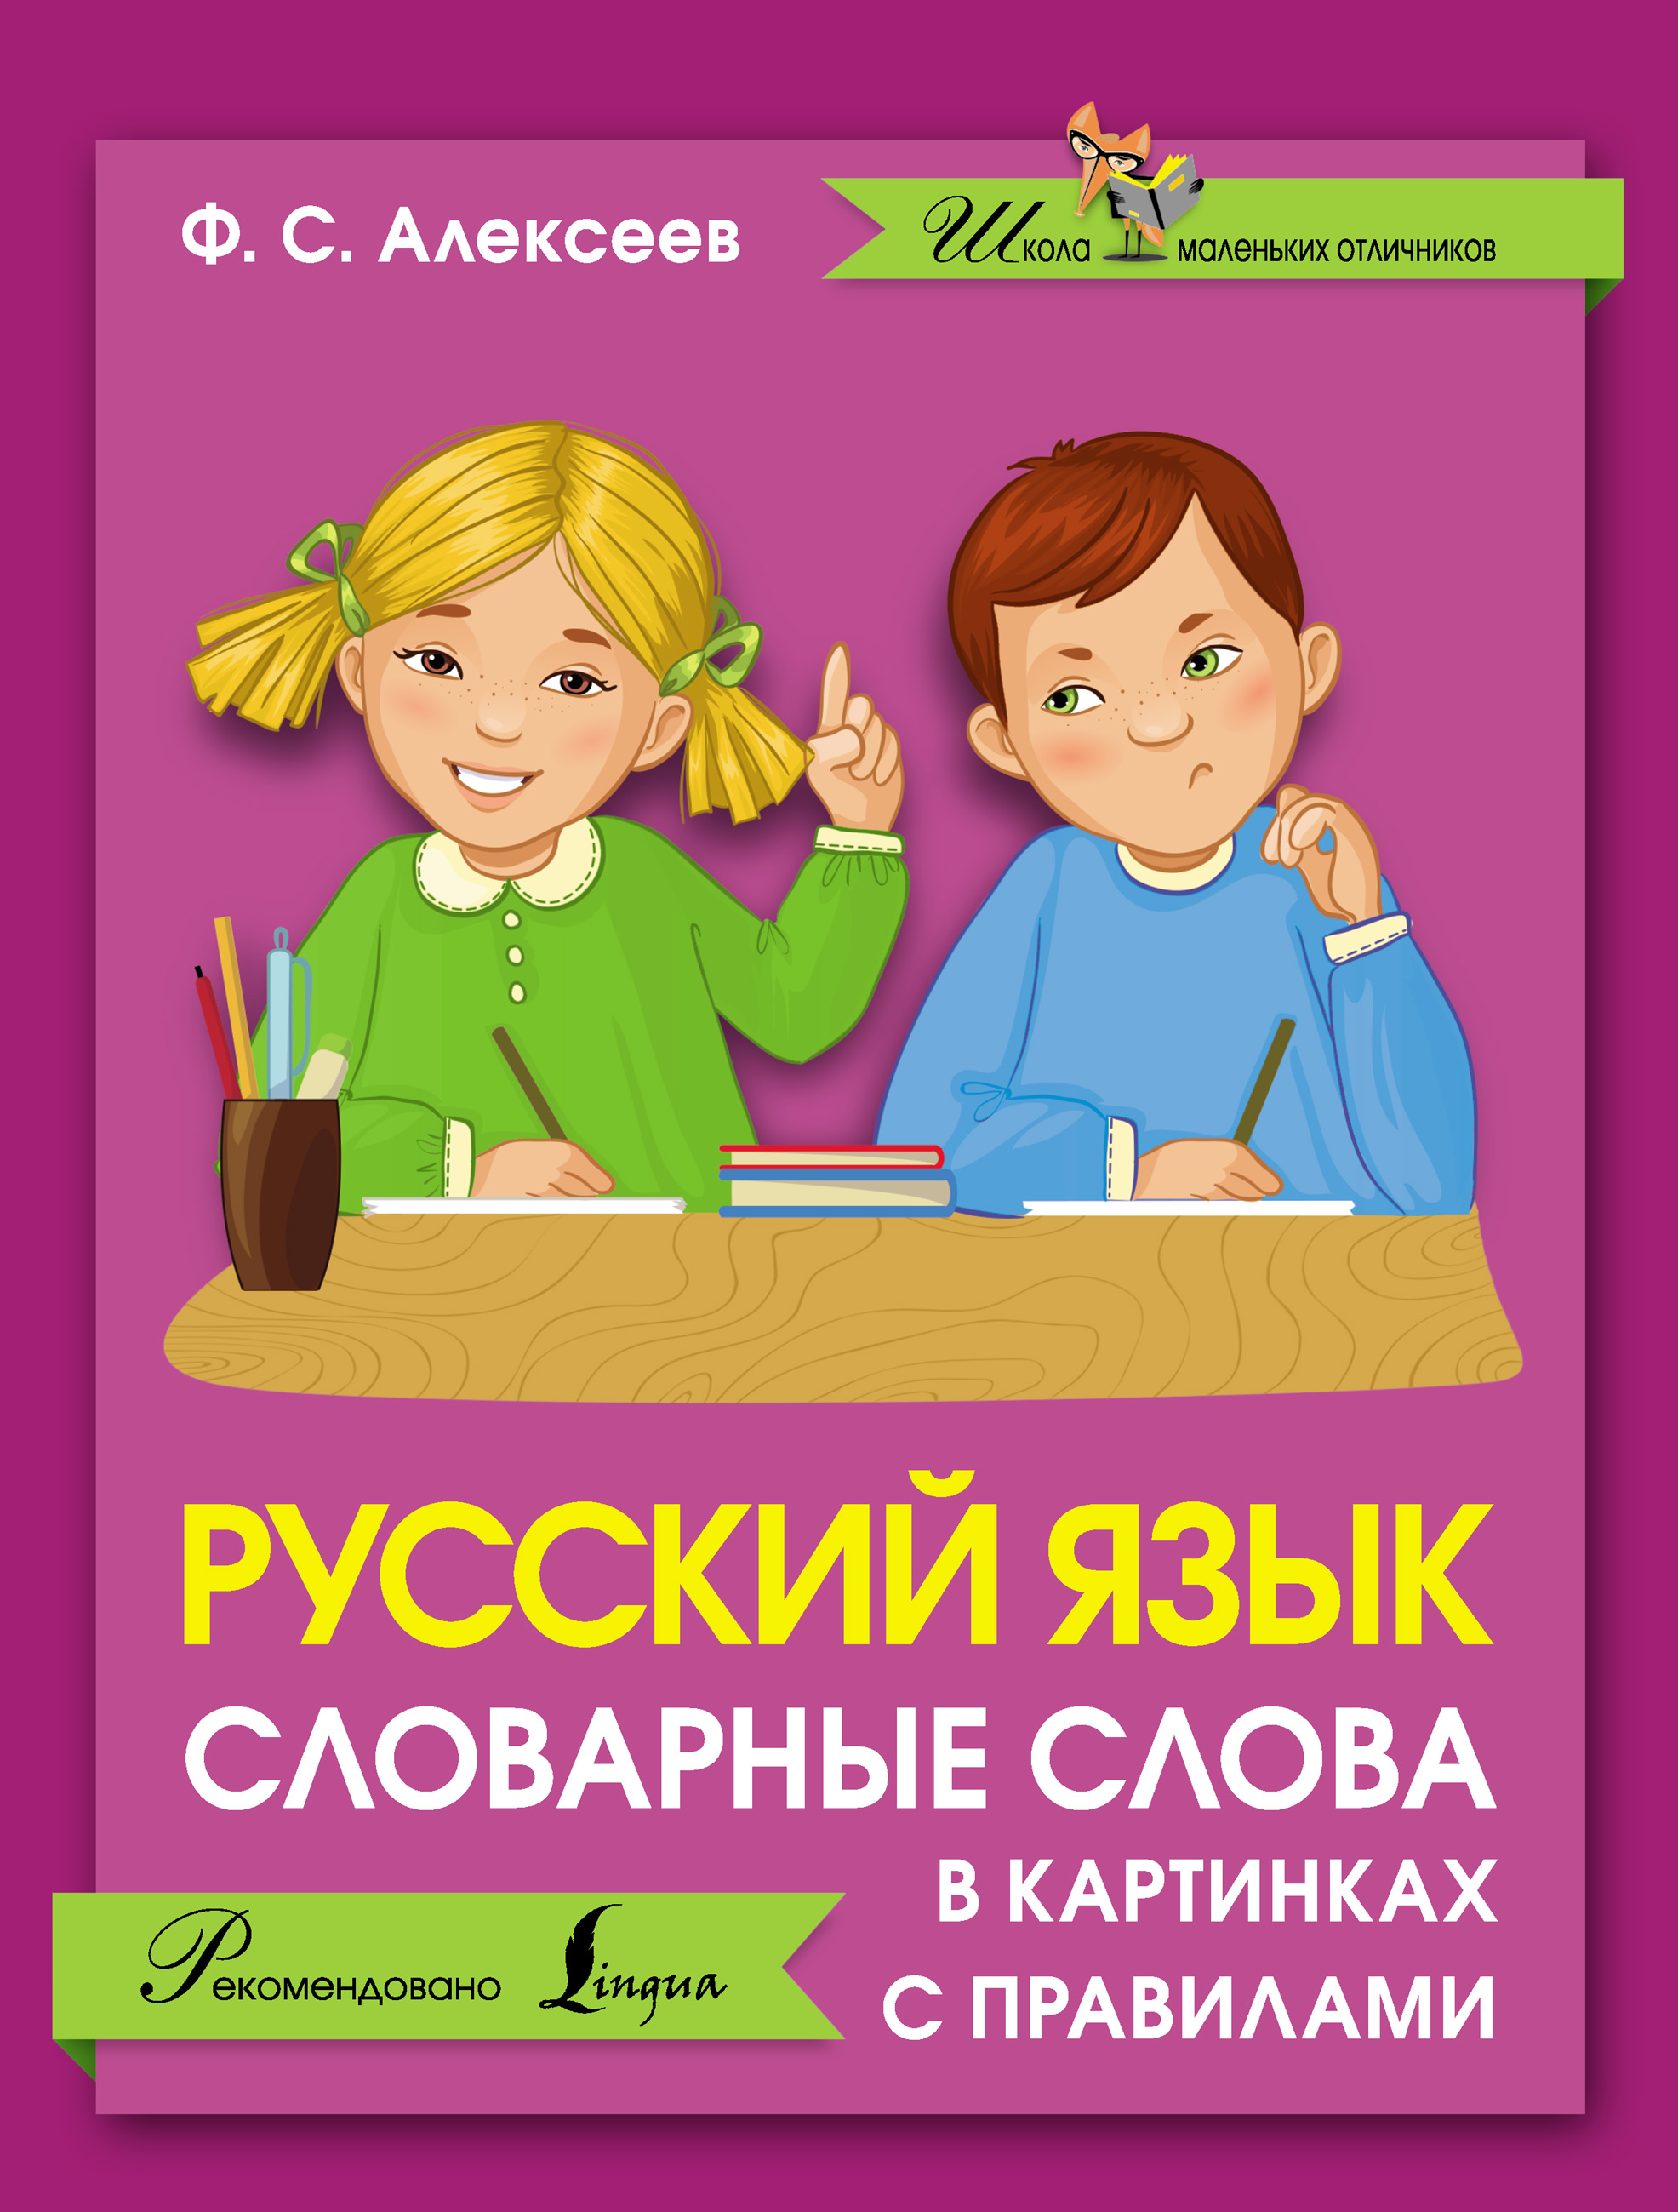 Учим русский легко. Русский язык для детей. Русский язык картинки. Русский язык картина. Русский язык книга.